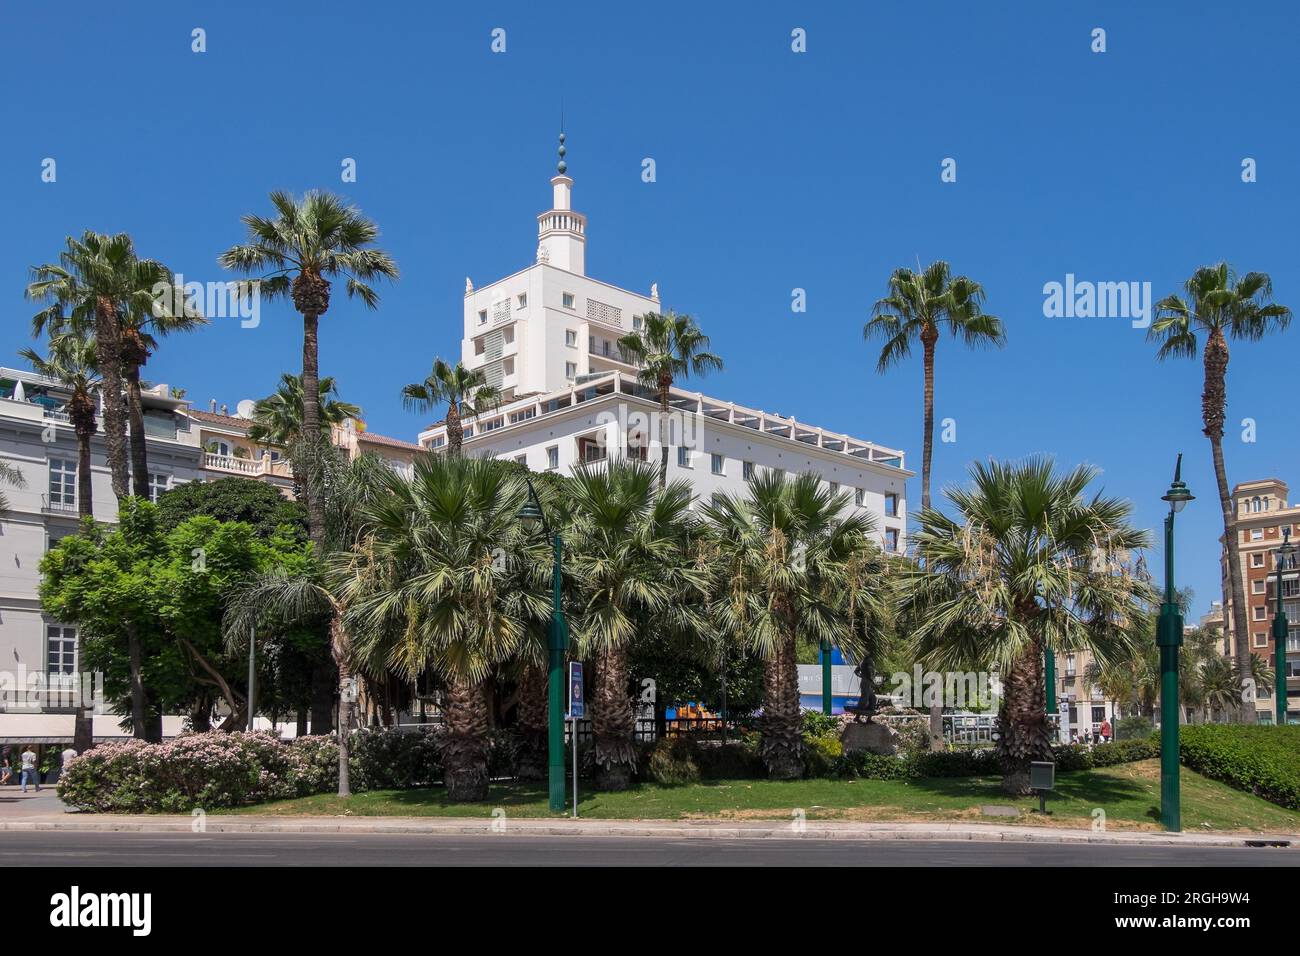 Plaza de la Marina and La Equitativa building in the urban center of the city of Malaga Stock Photo